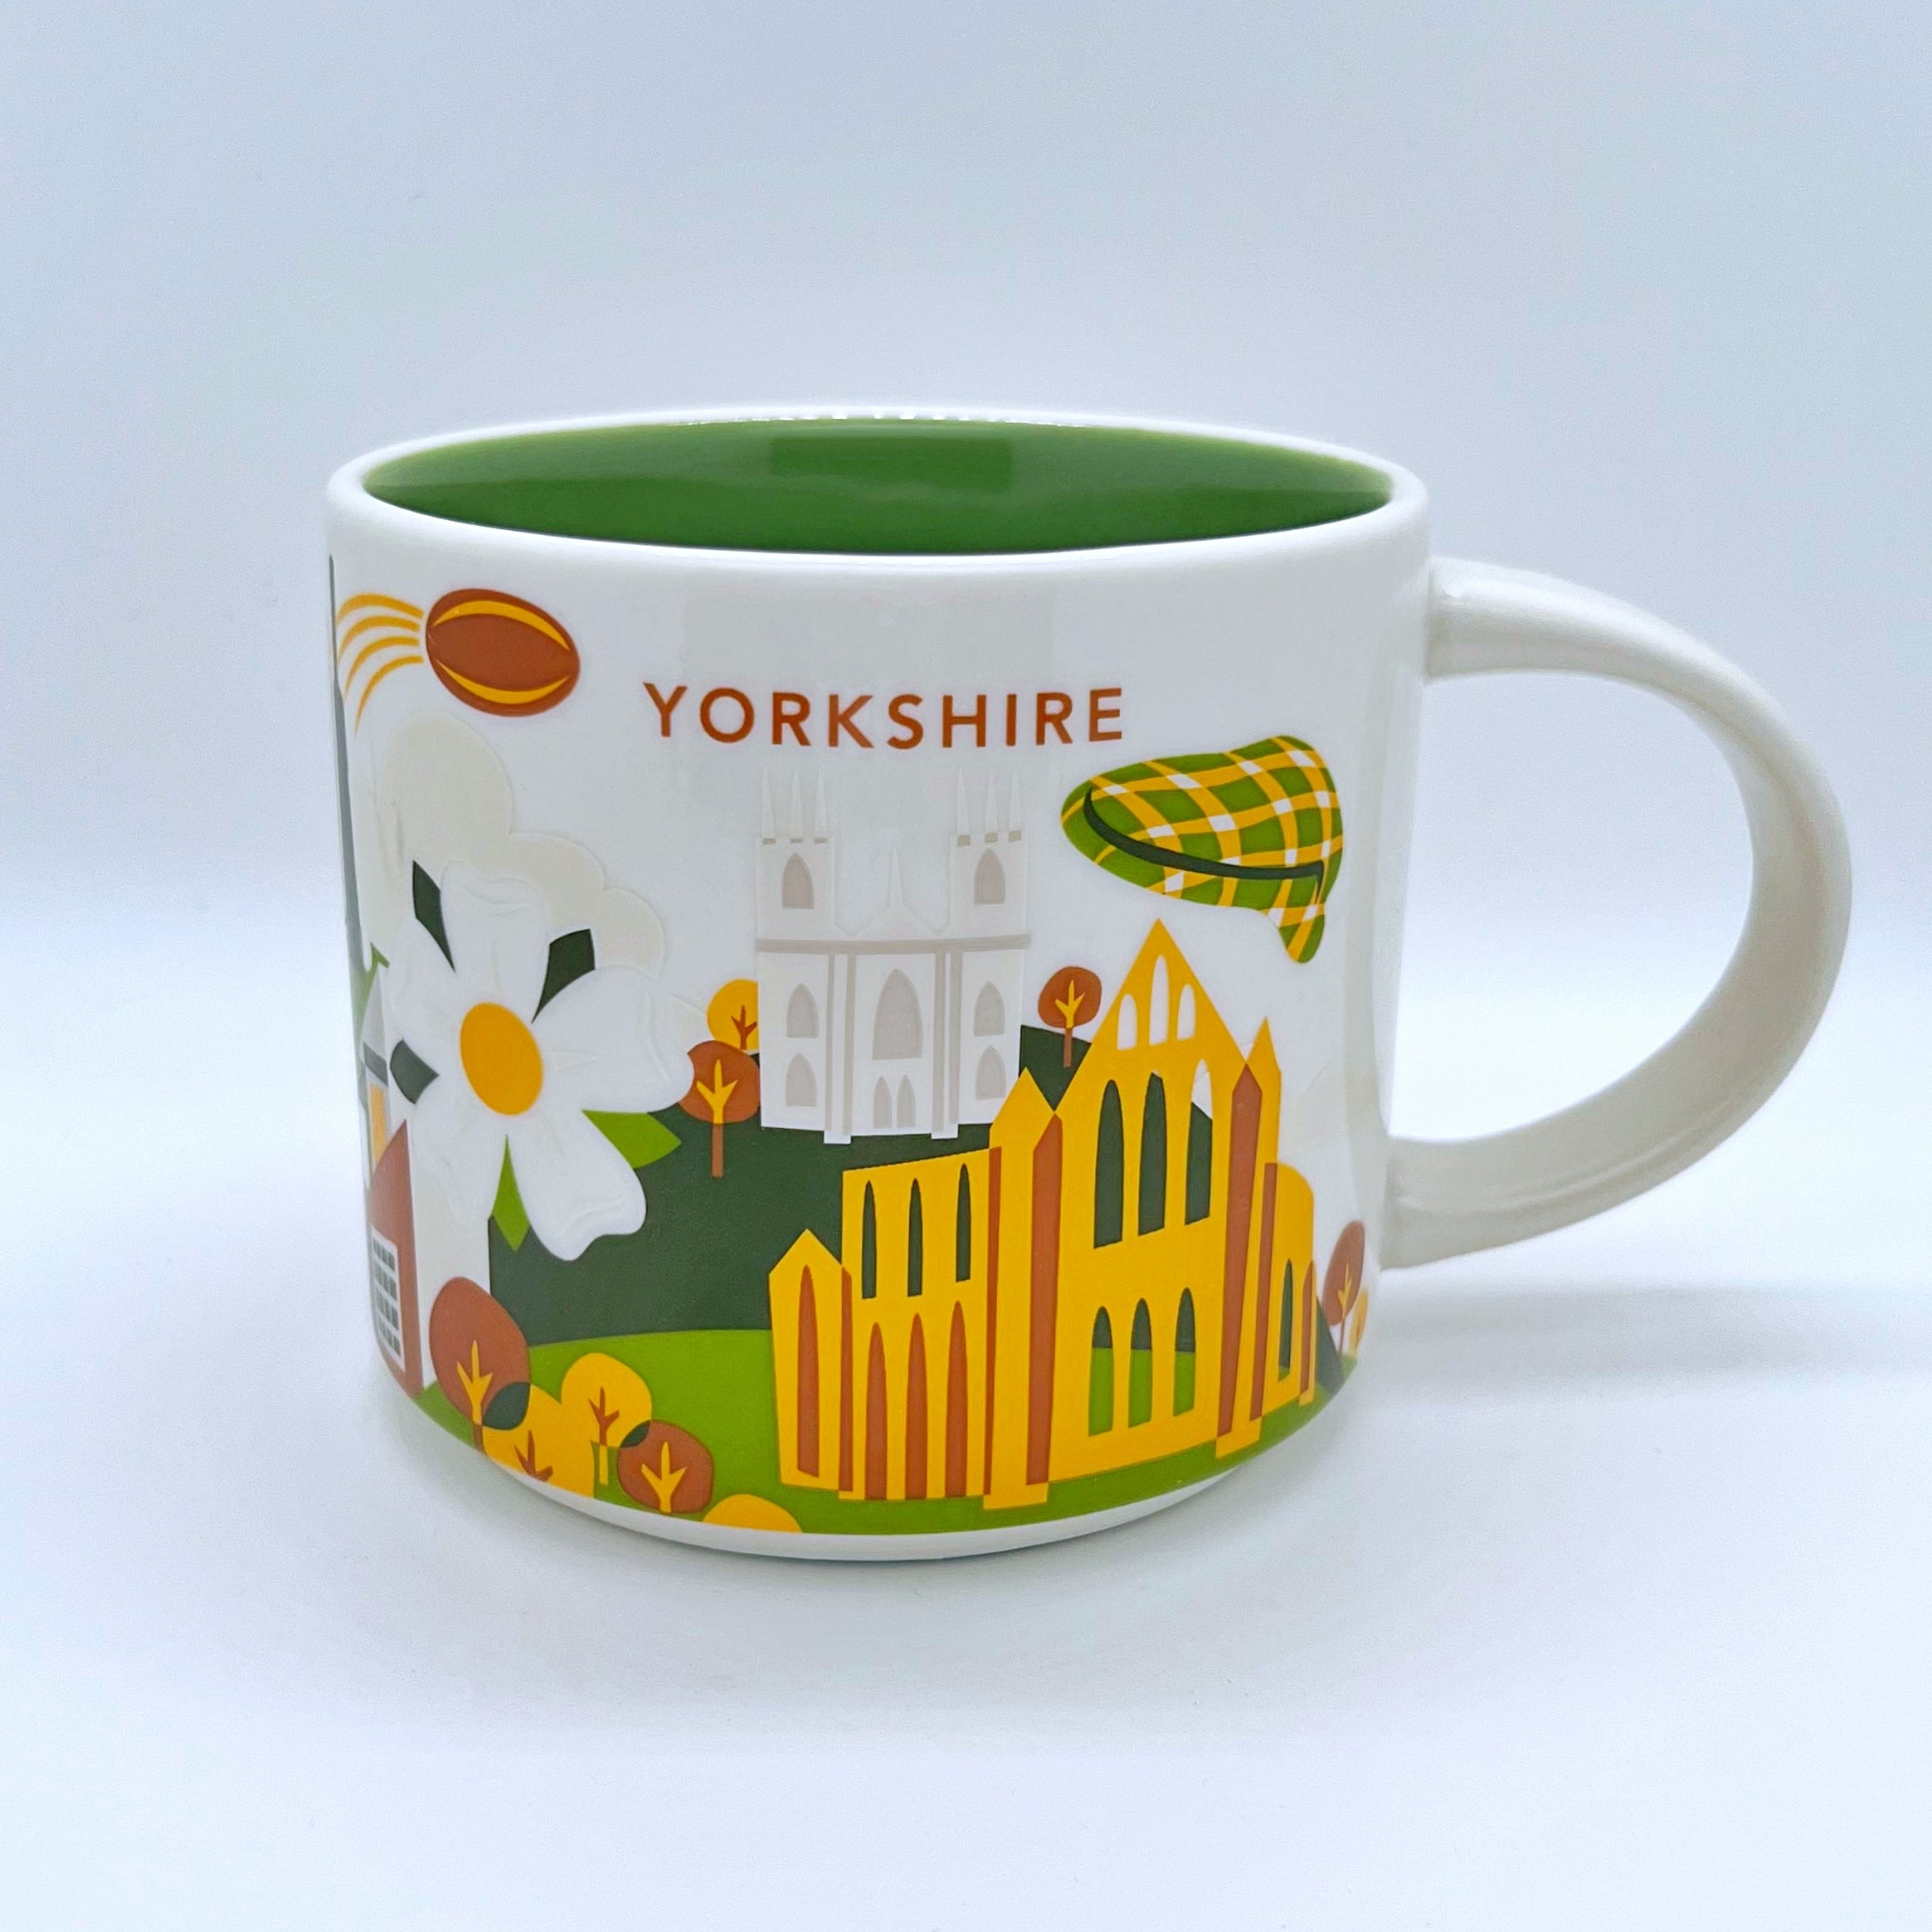 Kaffee Tee und Cappuccino Tasse von Starbucks mit gemalten Bildern aus der Stadt Yorkshire